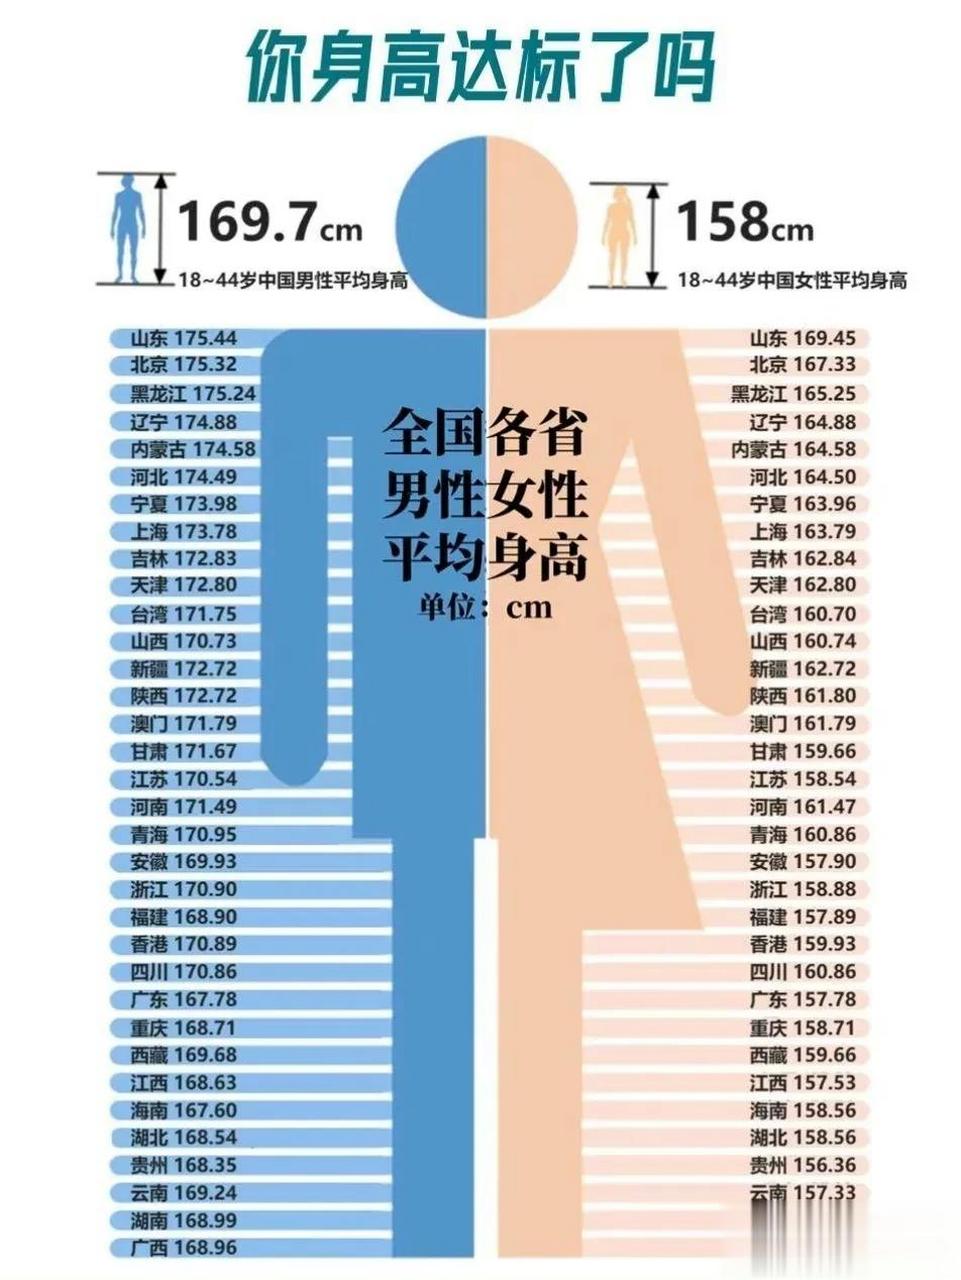 男生平均身高表图片